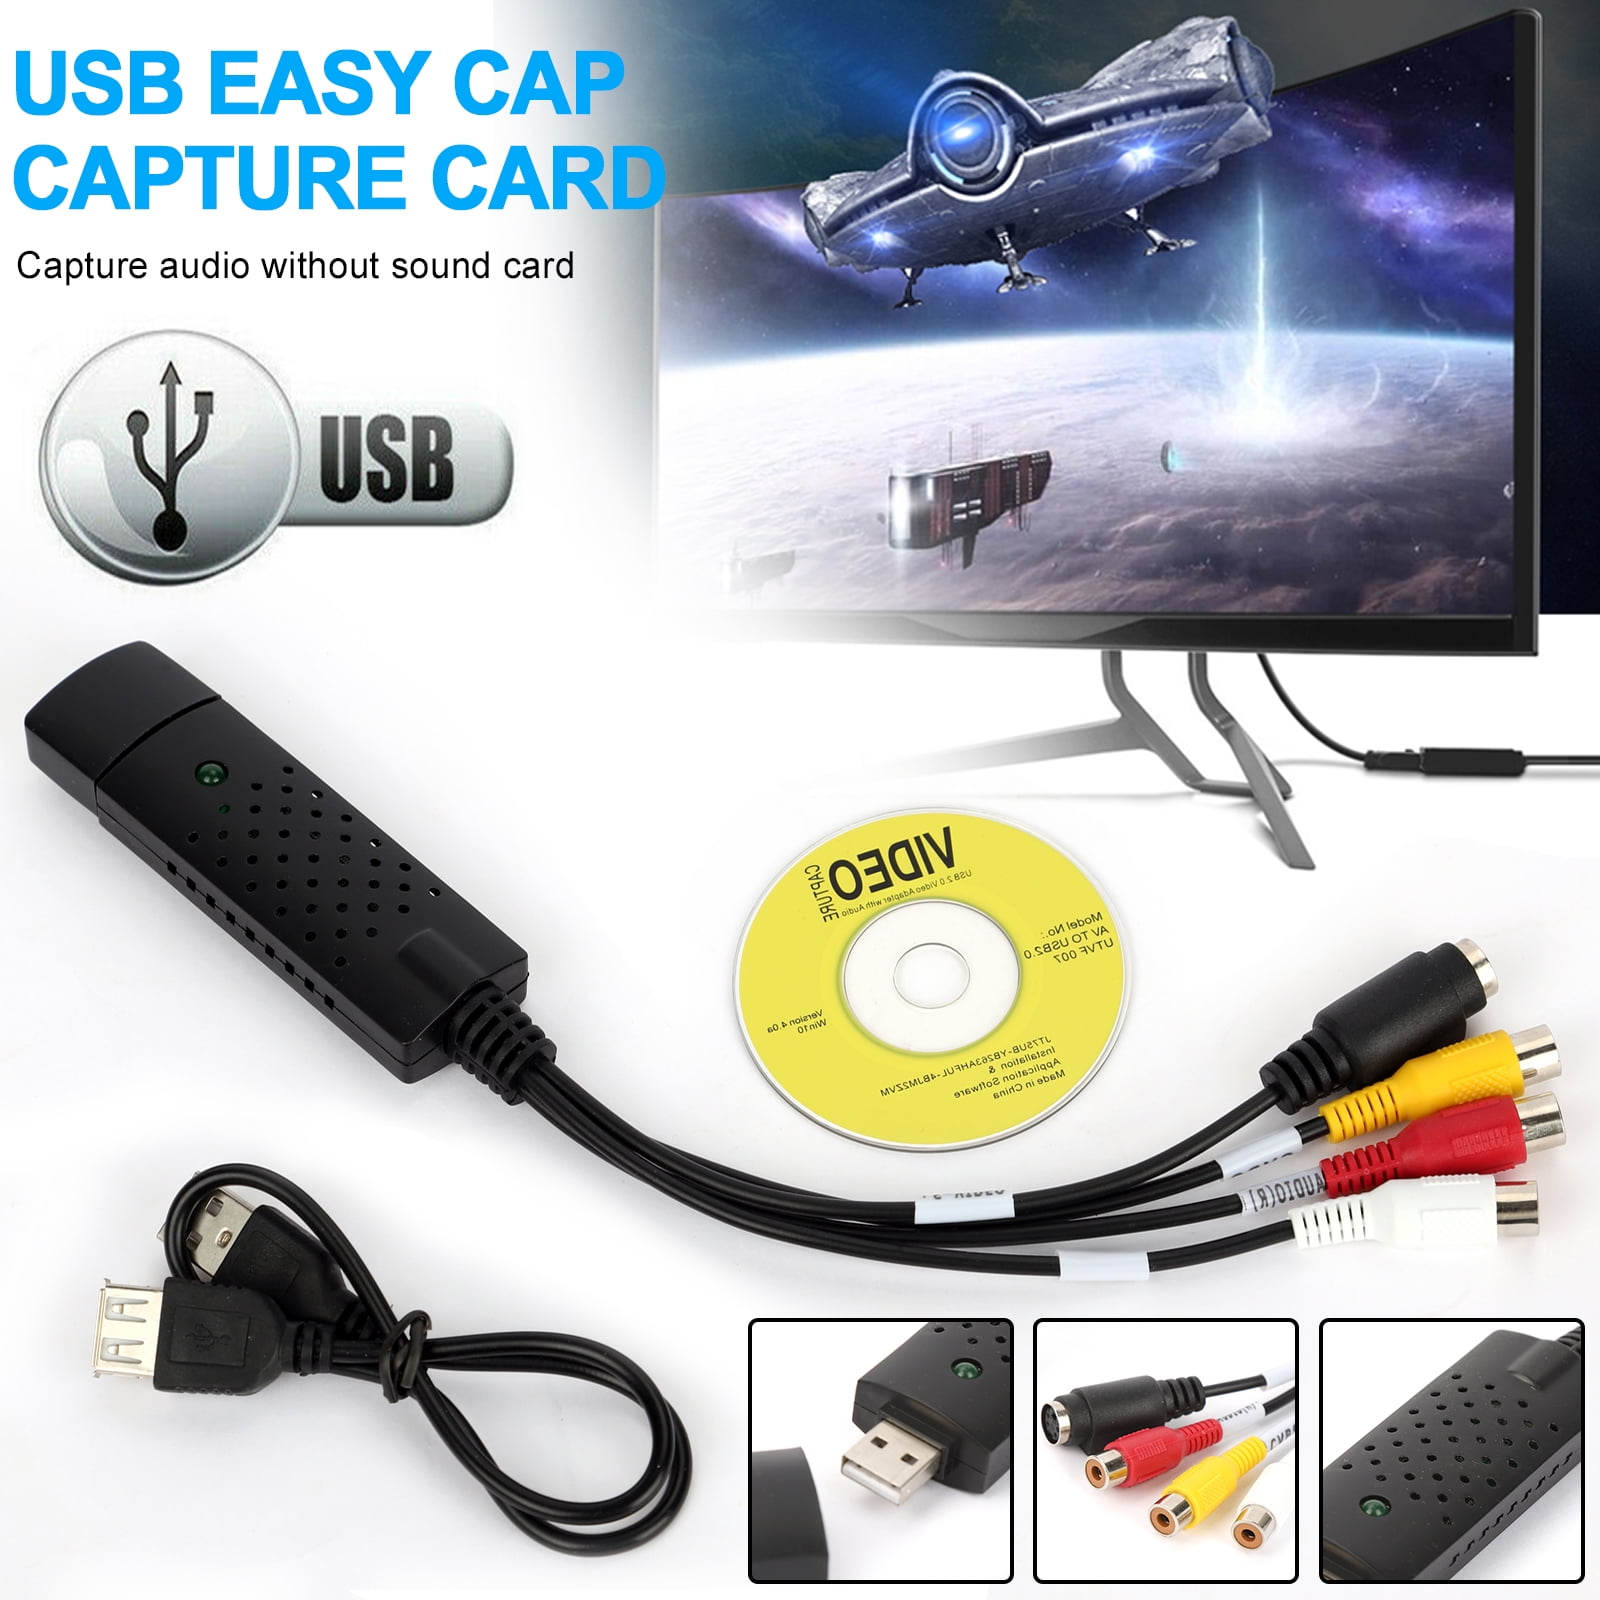 Passief impliceren opraken EasyCap USB 2.0 Capture Card Video TV DVD VHS Audio Capture Card 3 in 1  Adapter - Walmart.com